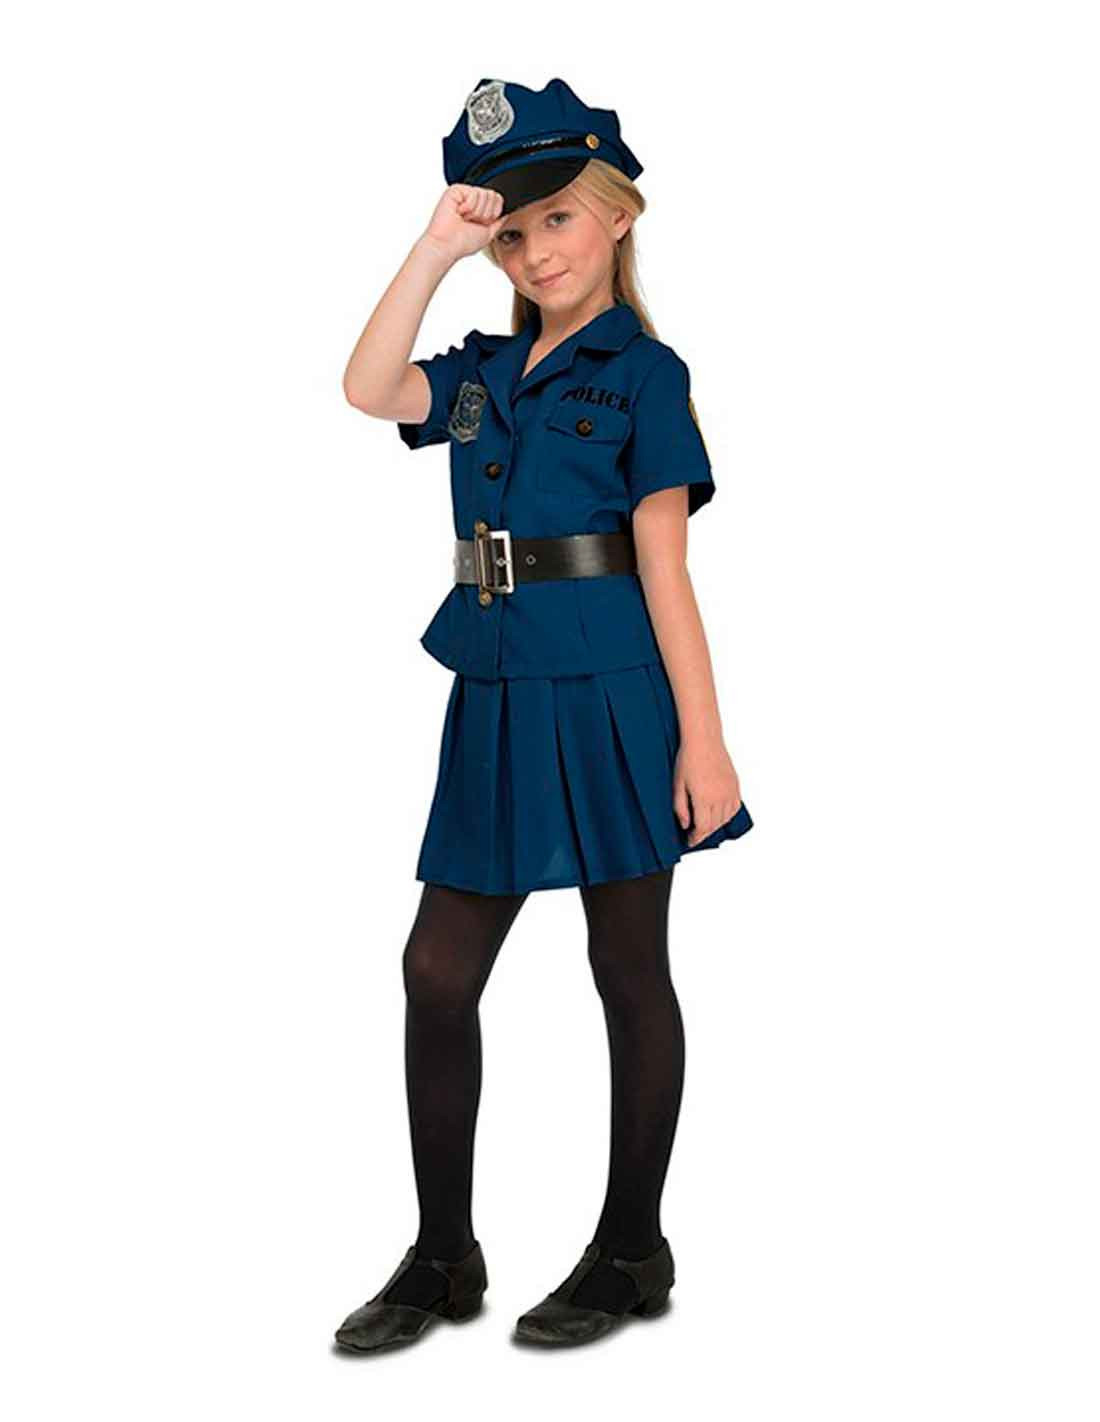 Kauf dein Polizistin Kostüm im online Kostümgeschäft Bacanal